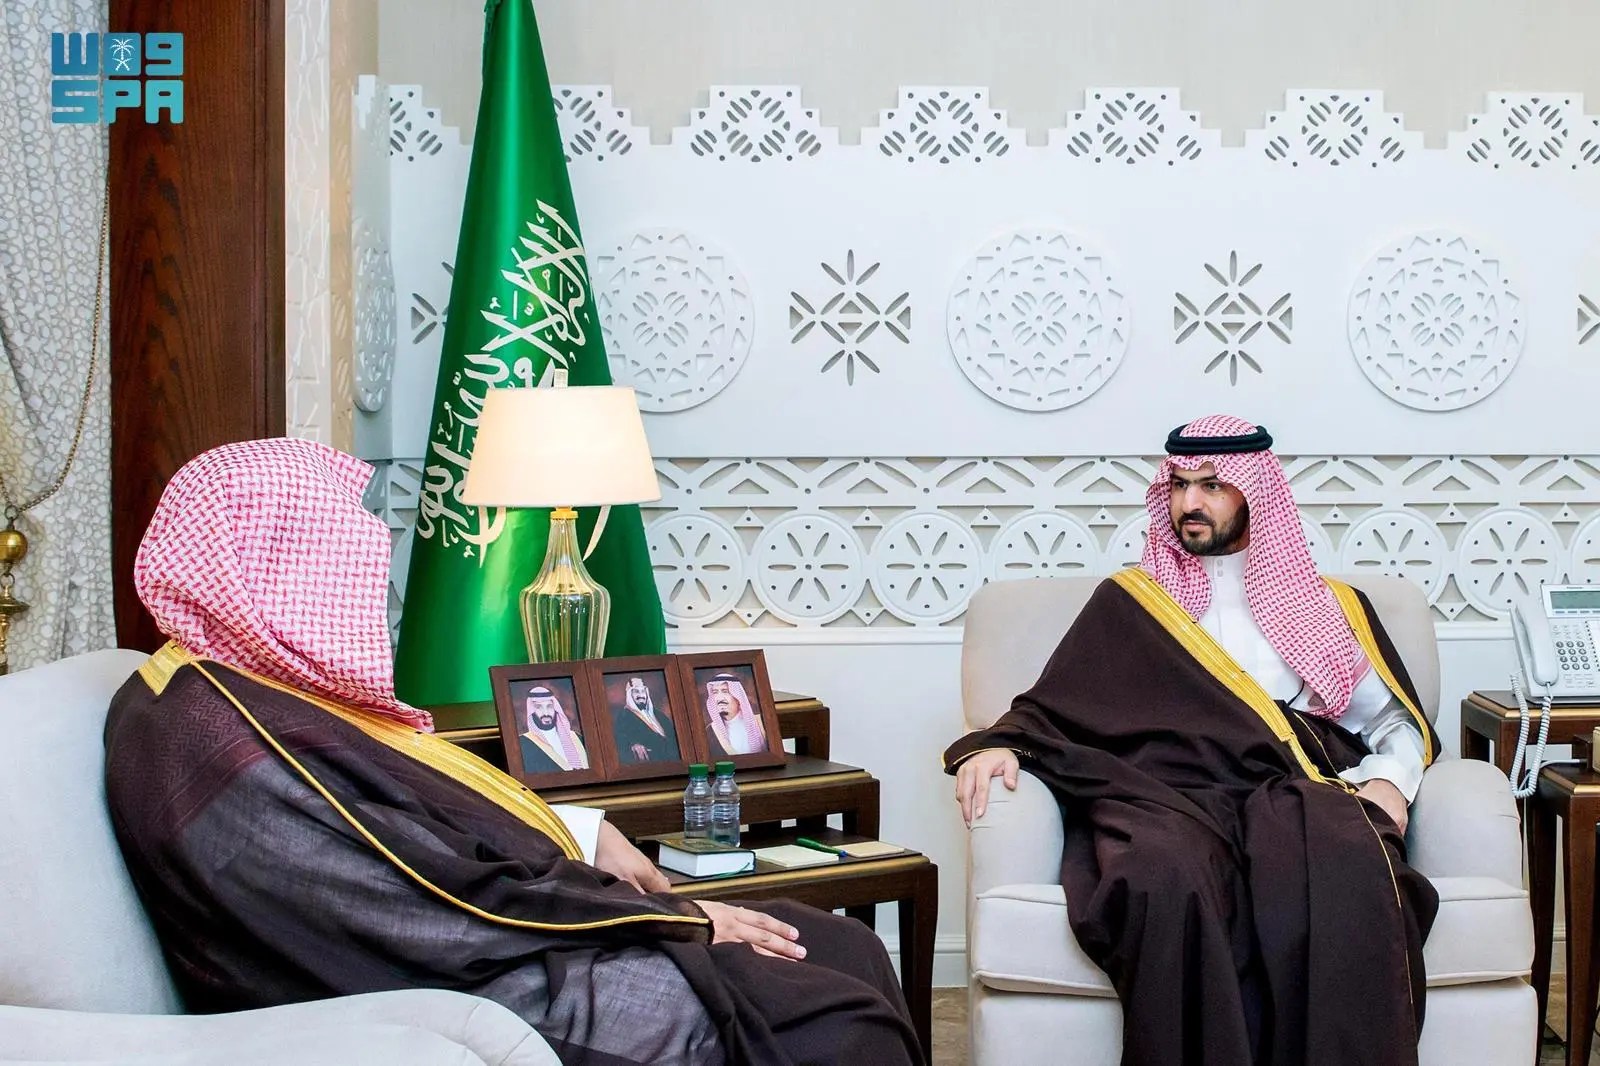 الأمير سعود بن بندر يستقبل رئيس المحكمة الإدارية بالدمام